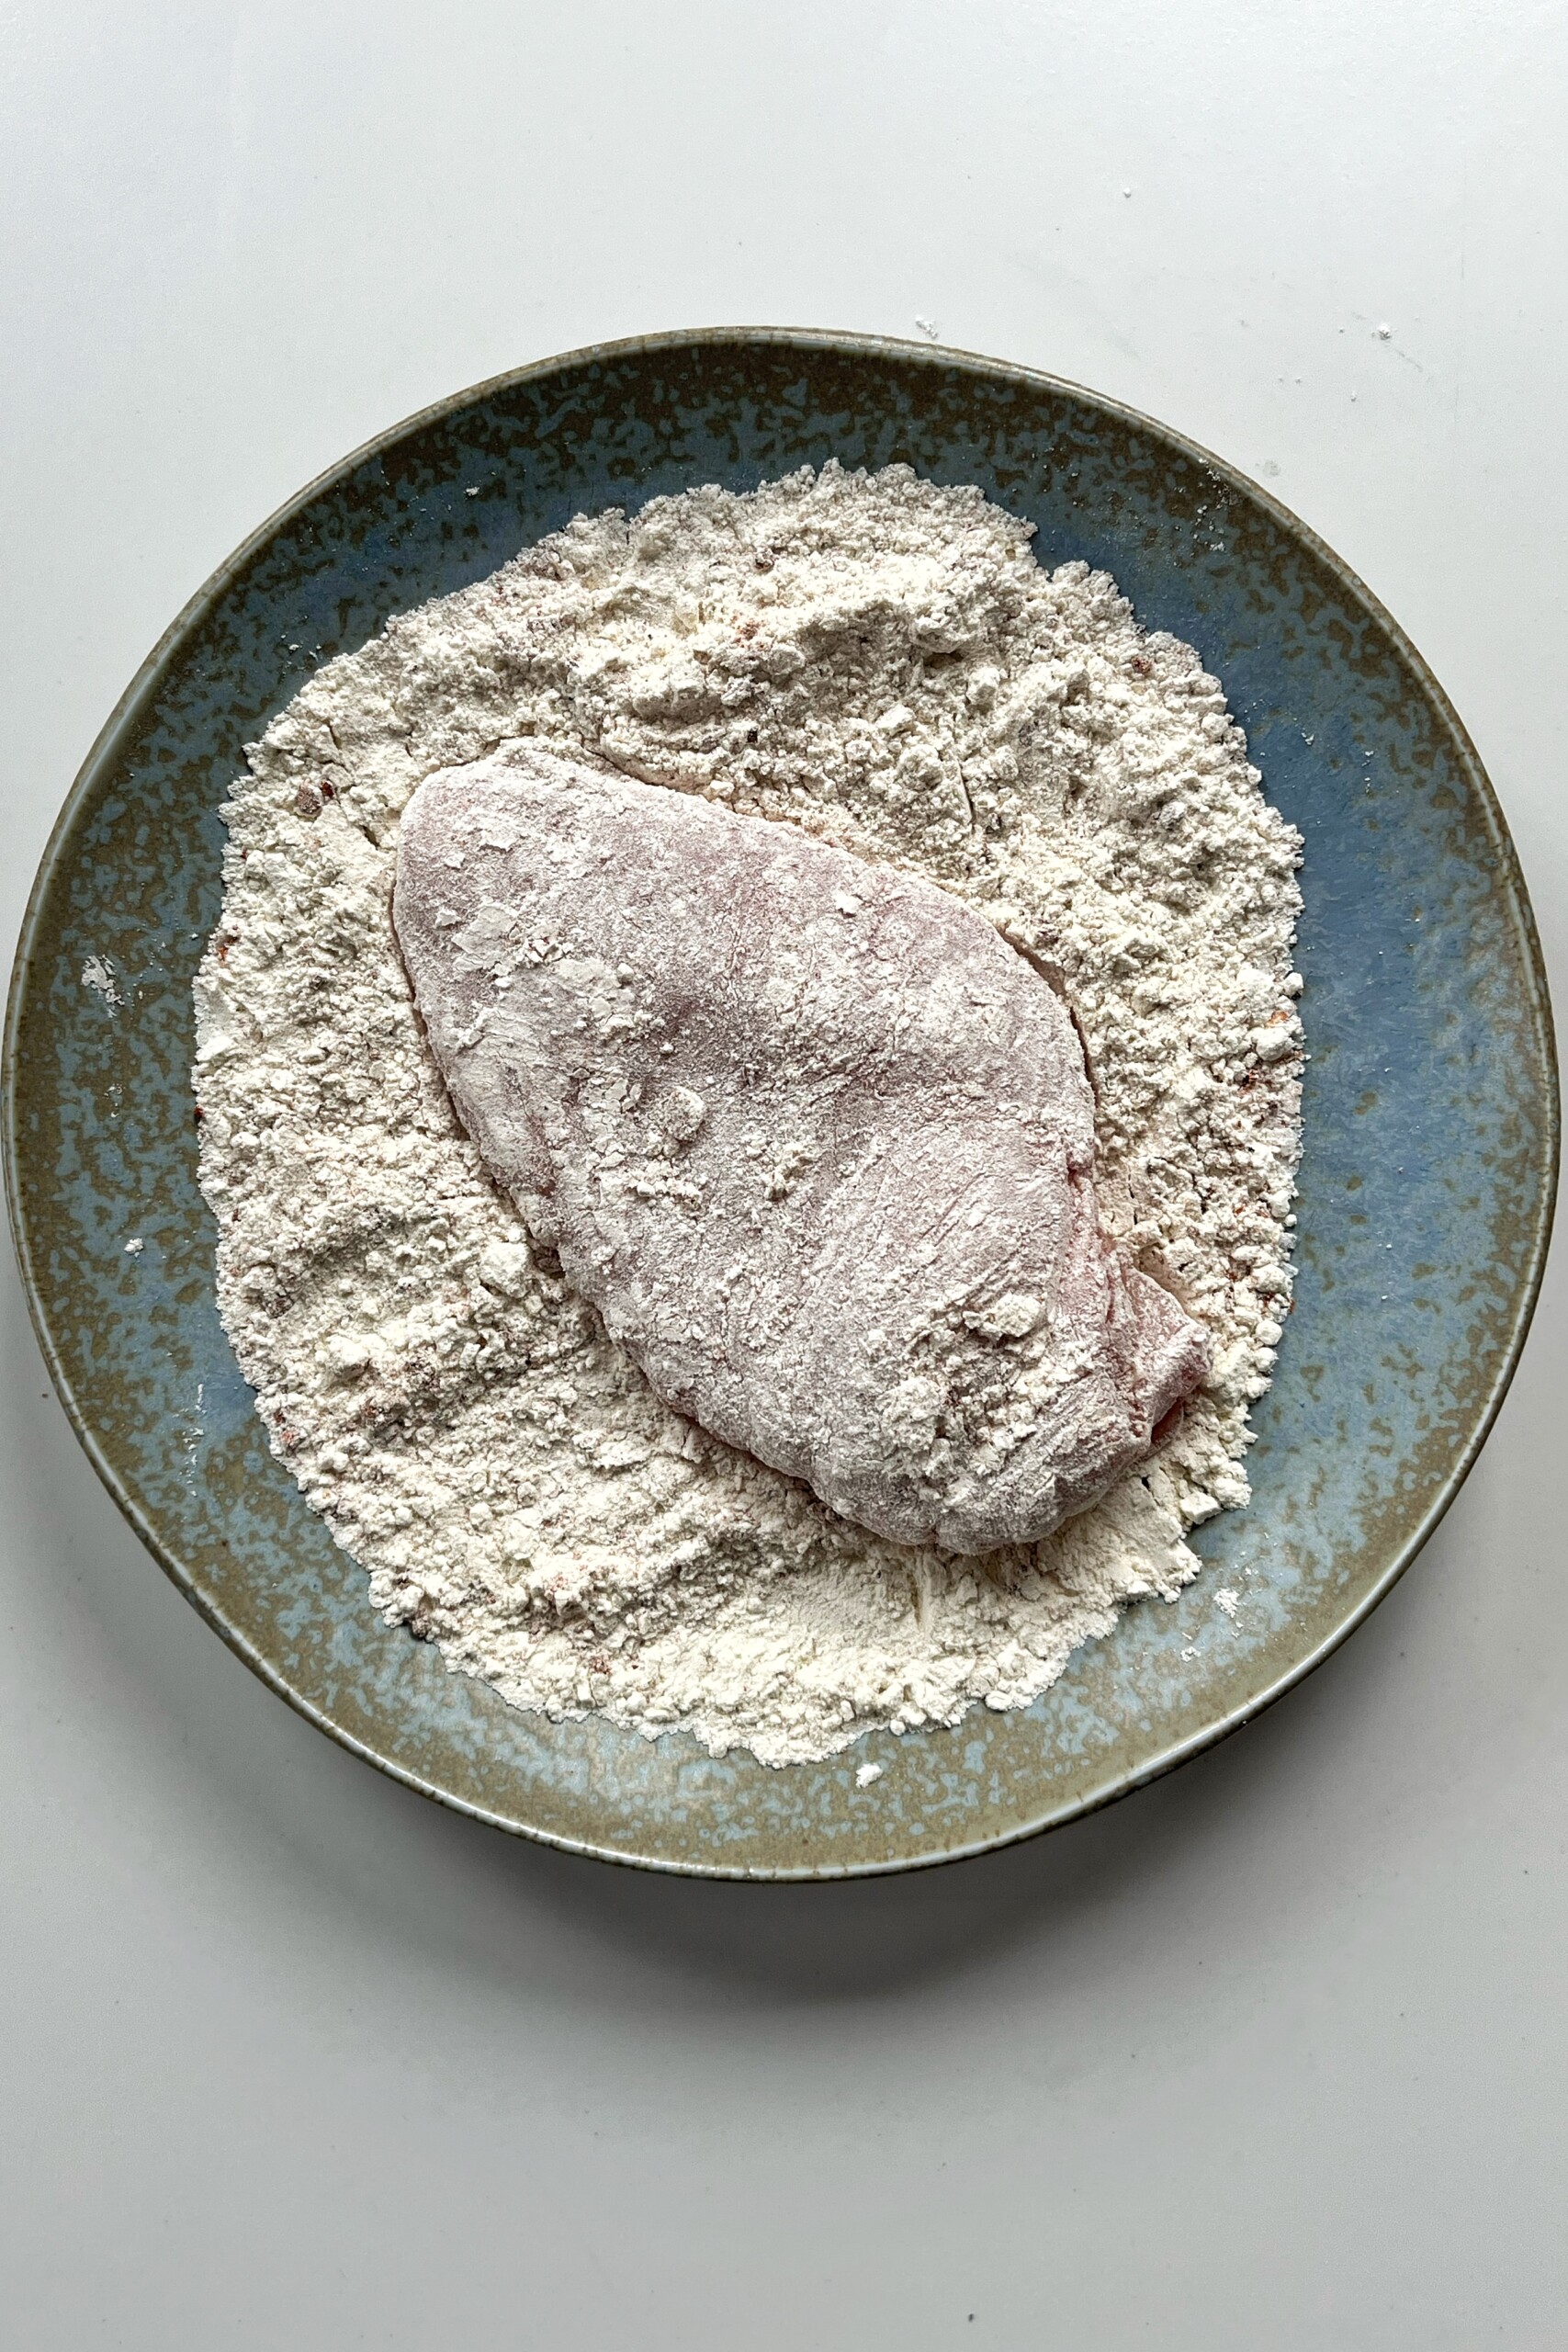 Dredging chicken breast in a flour mixture. 